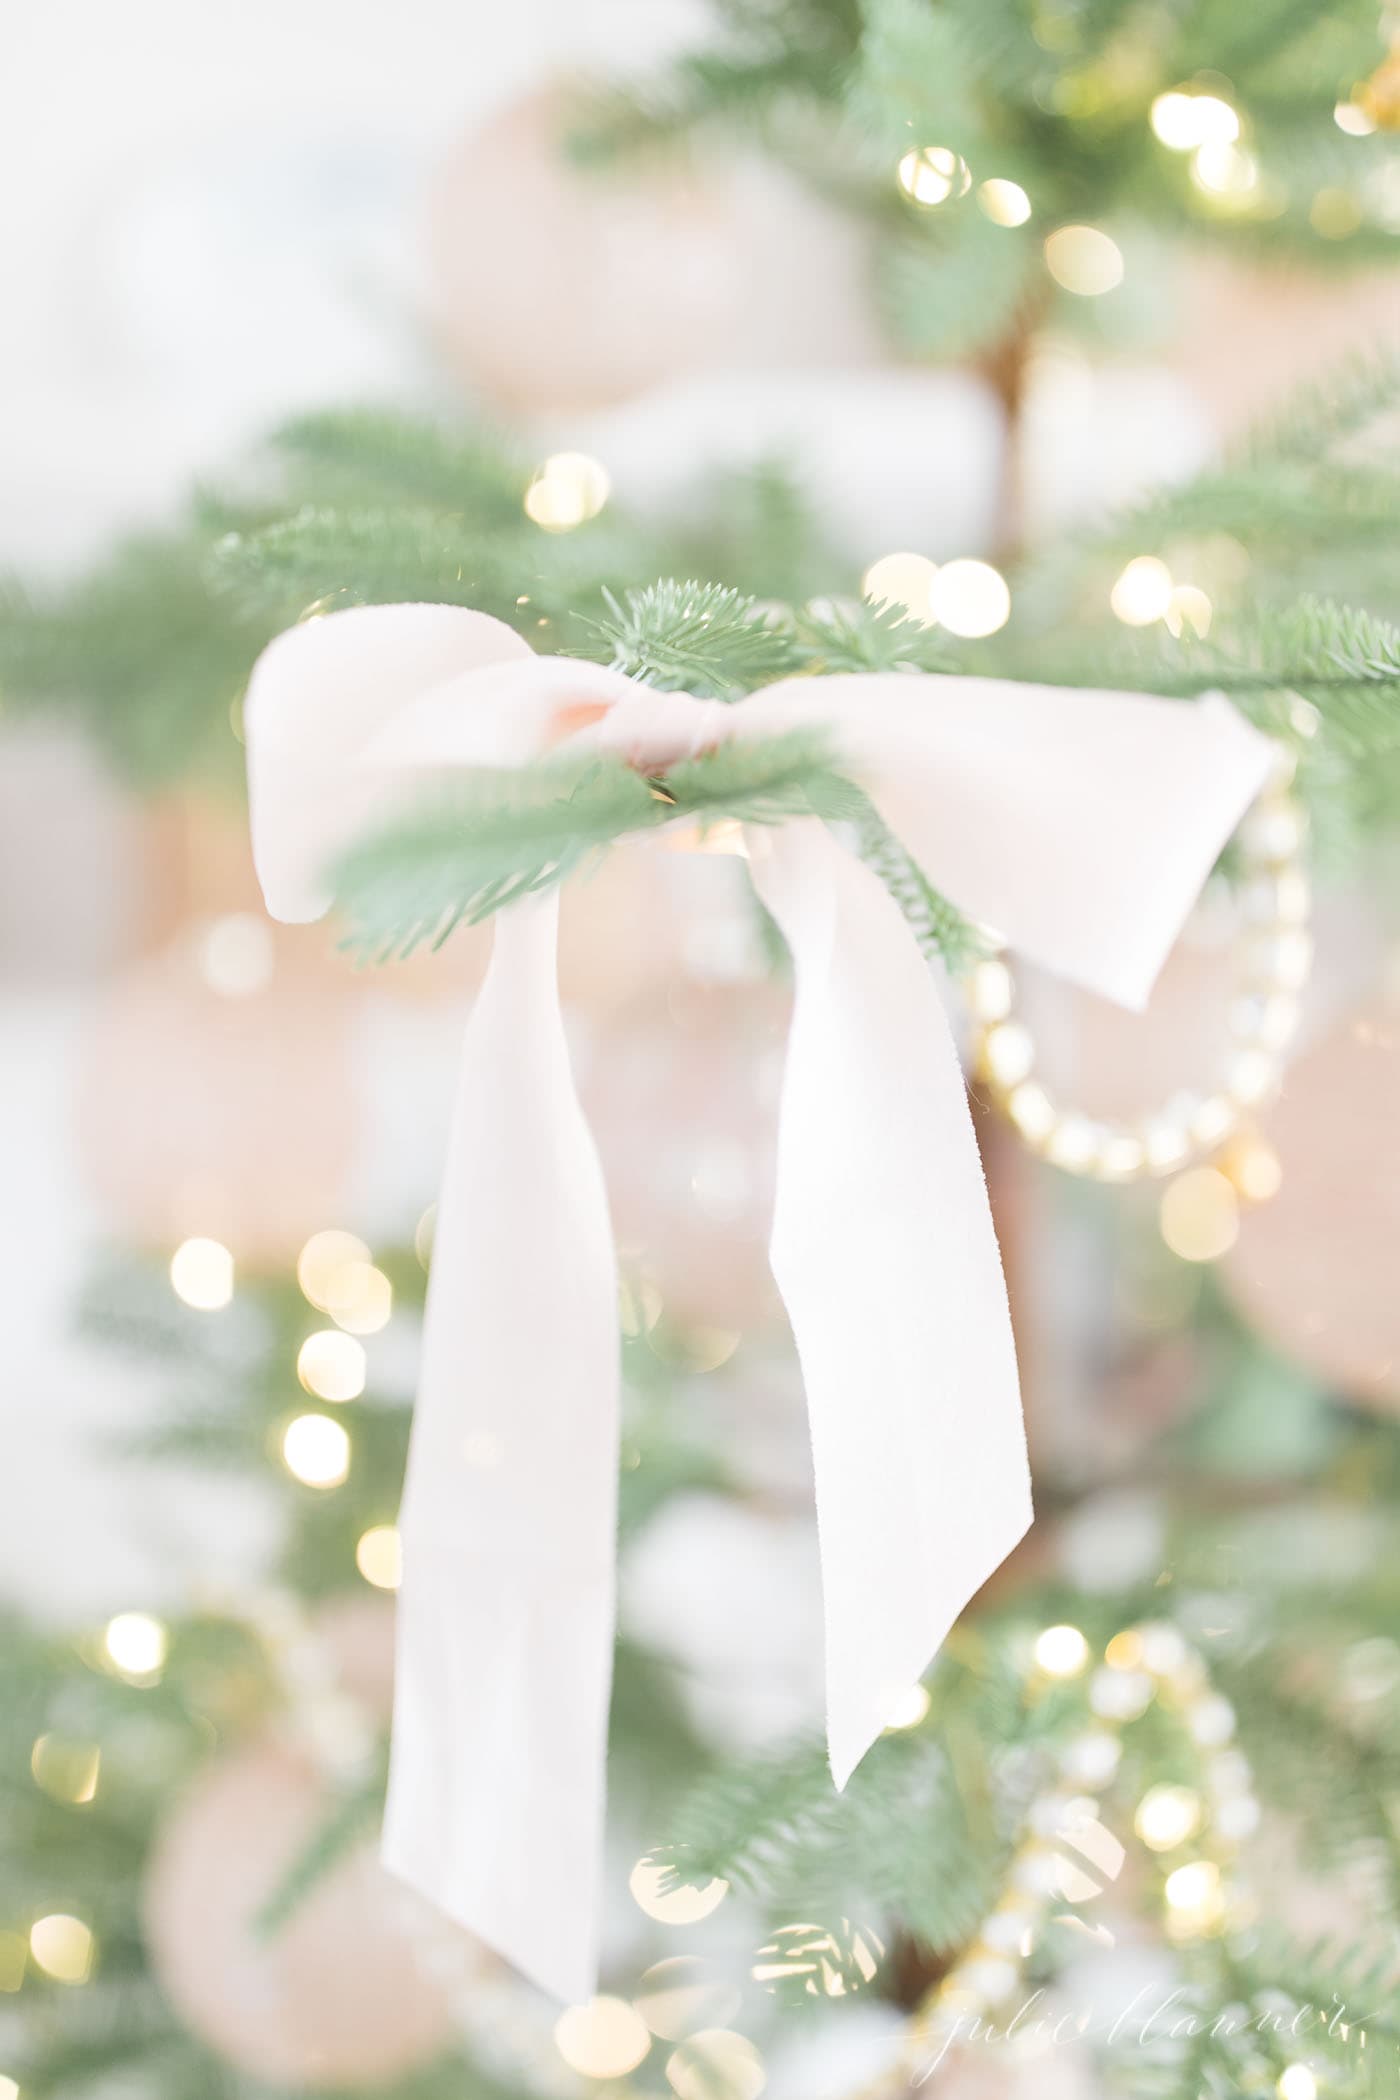 稀疏的圣诞树上系着柔软的粉色丝绸蝴蝶结